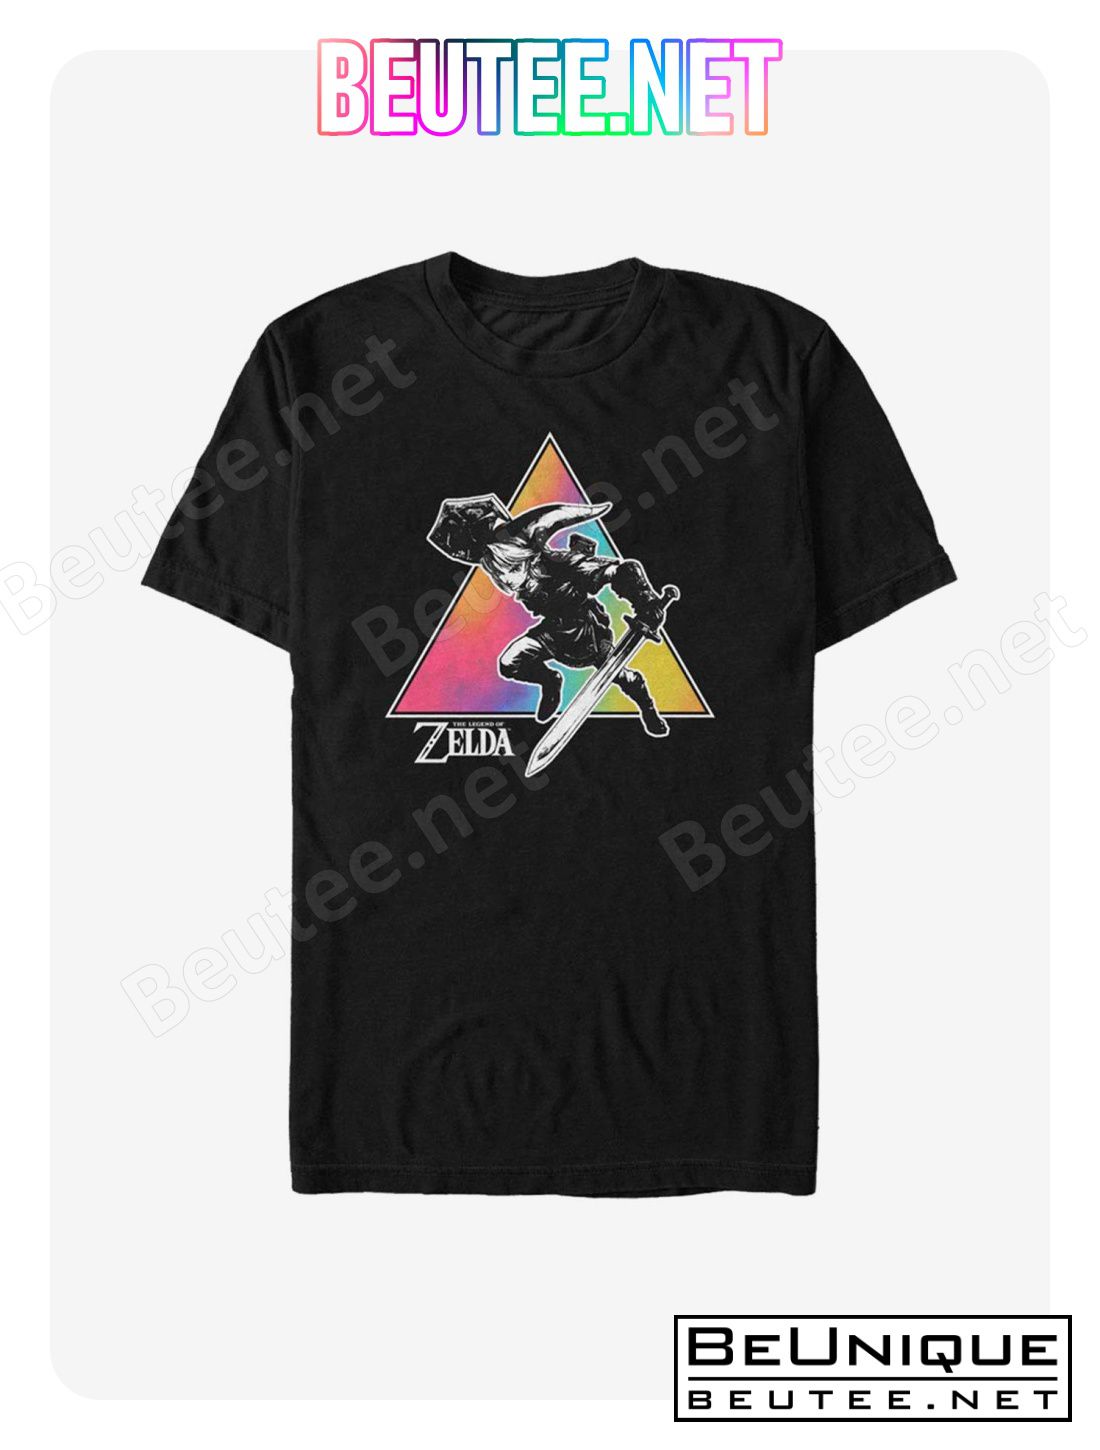 The Legend Of Zelda Tie Dye Link Silhouette T-Shirt